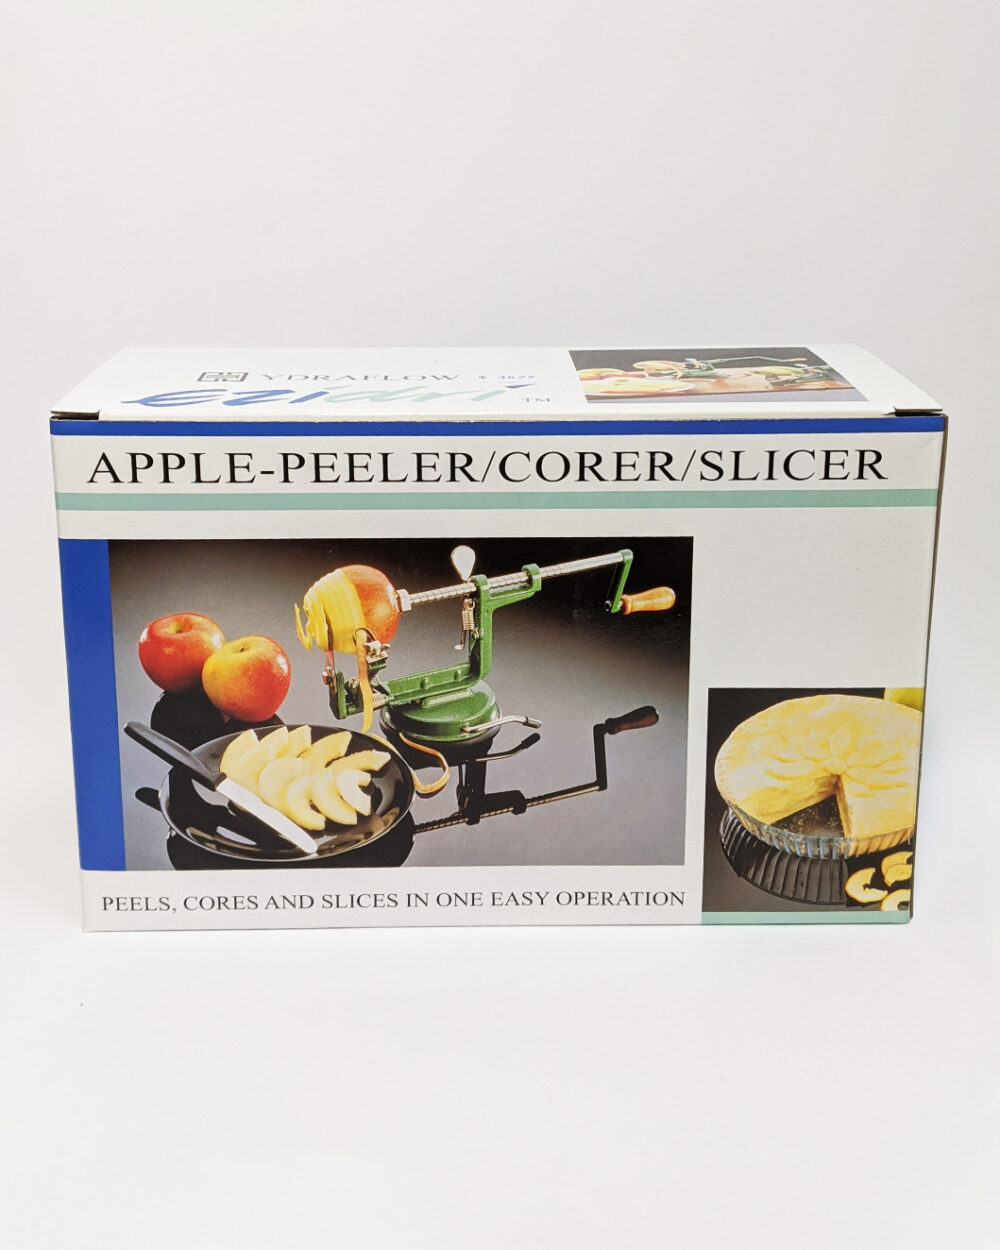 The Wholeness Co - Apple Peeler Corer Slicer